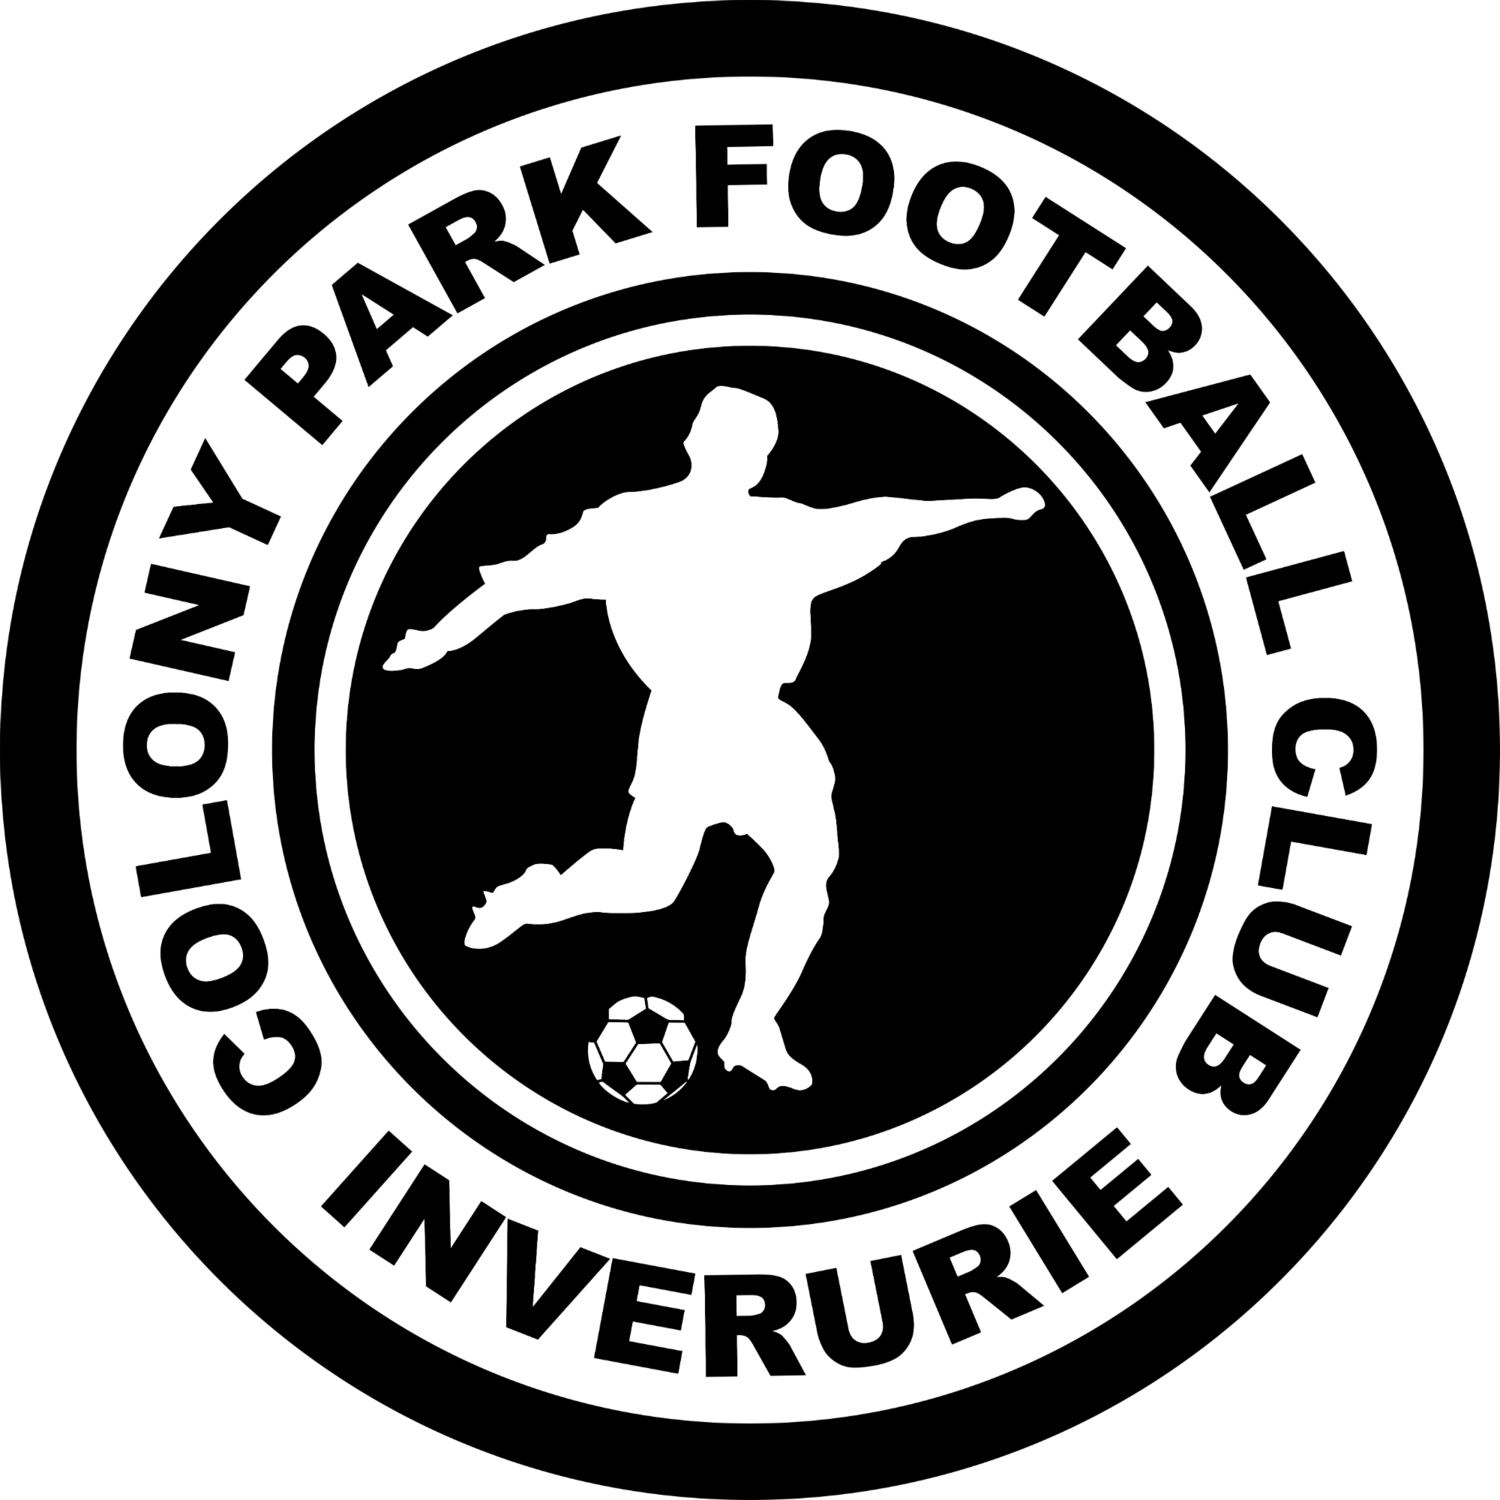 Black and White Soccer Club Logo - Colony Park Football Club